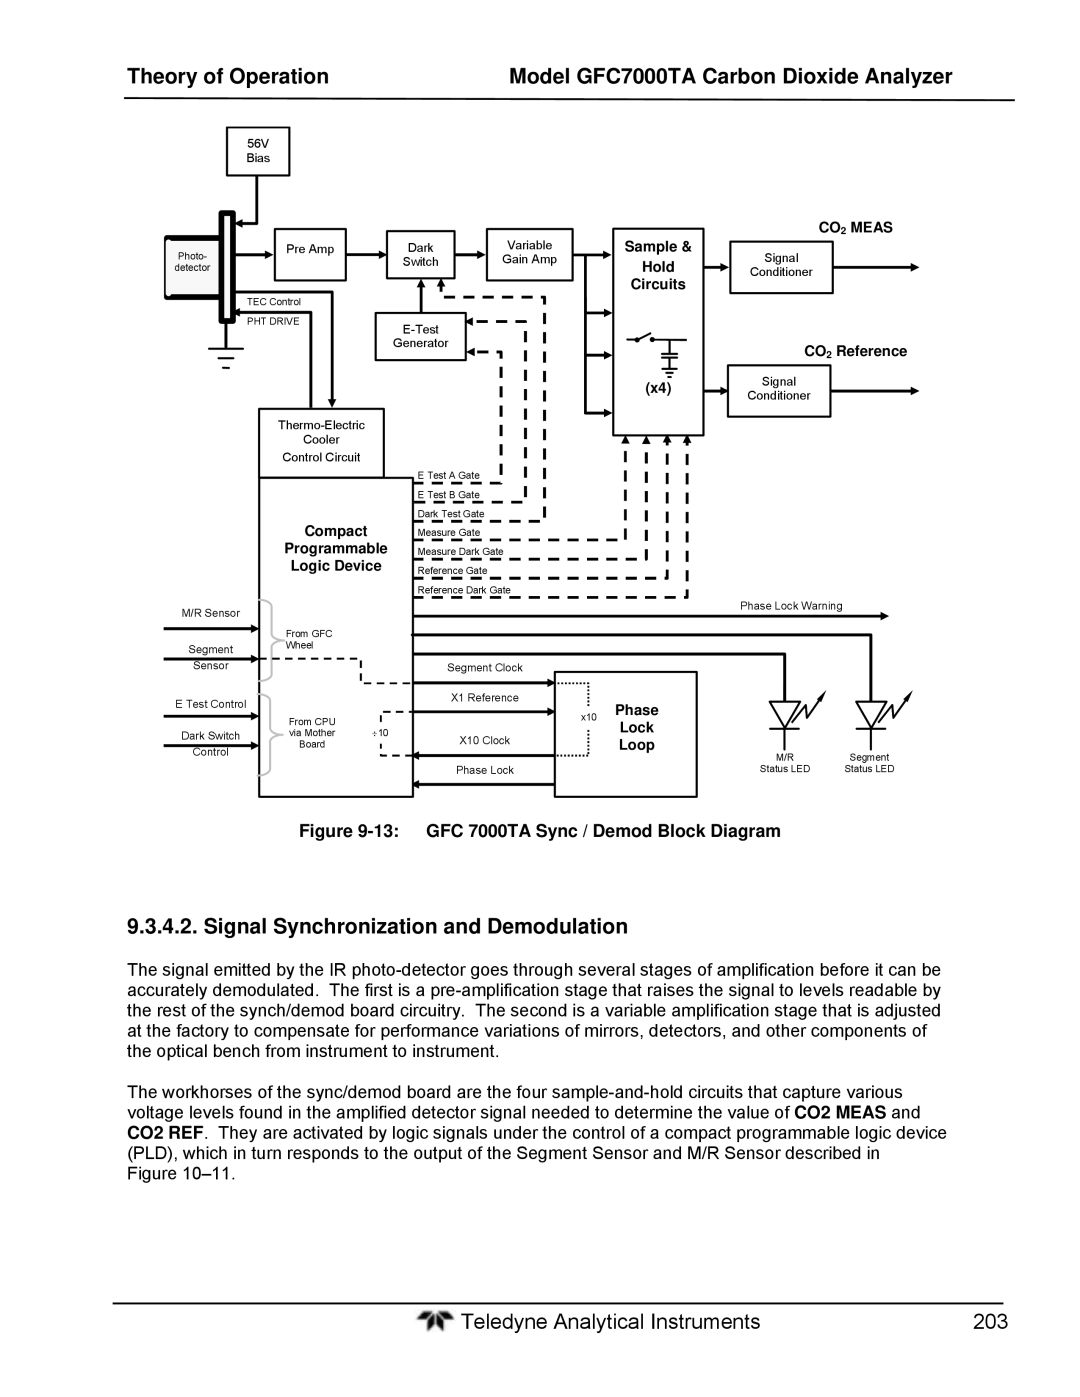 Teledyne gfc 7000ta operation manual Signal Synchronization and Demodulation, GFC 7000TA Sync / Demod Block Diagram 